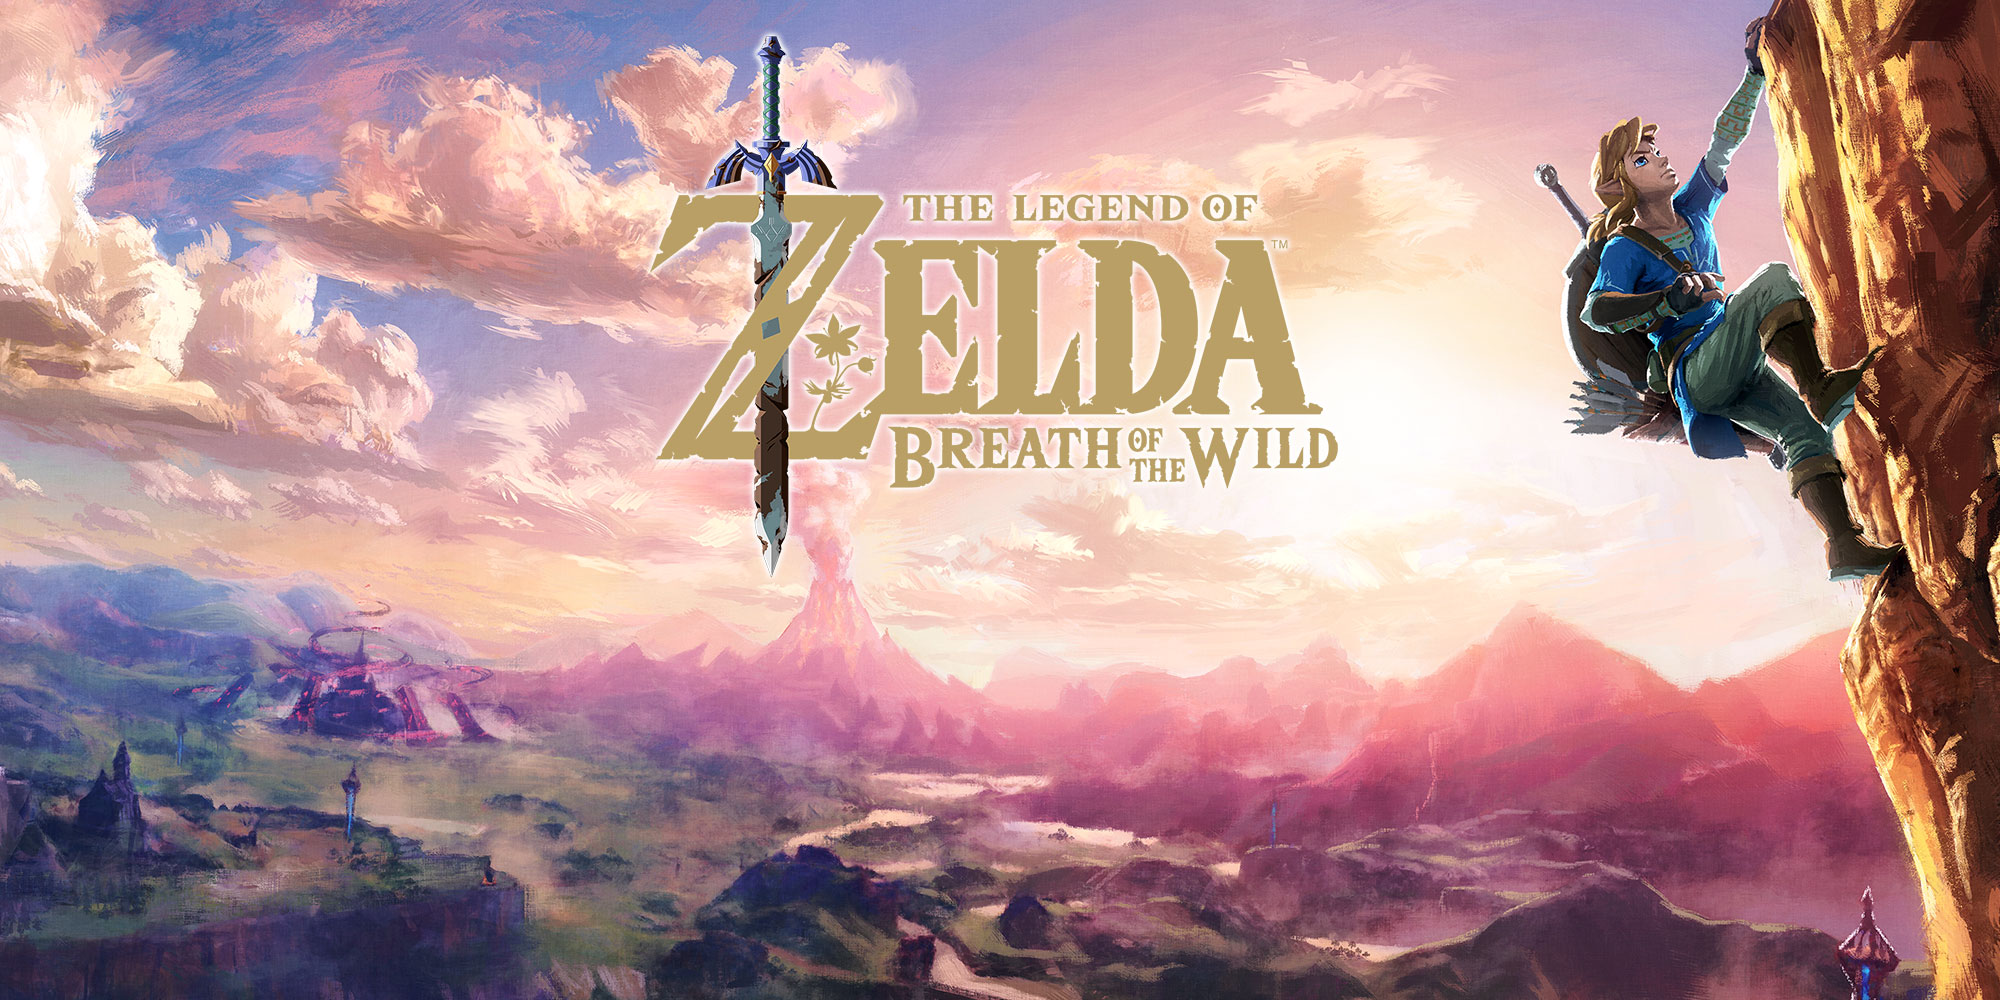 Secondo Kimishima, il successo di The Legend of Zelda: Breath of the Wild è legato ai pareri positivi della critica